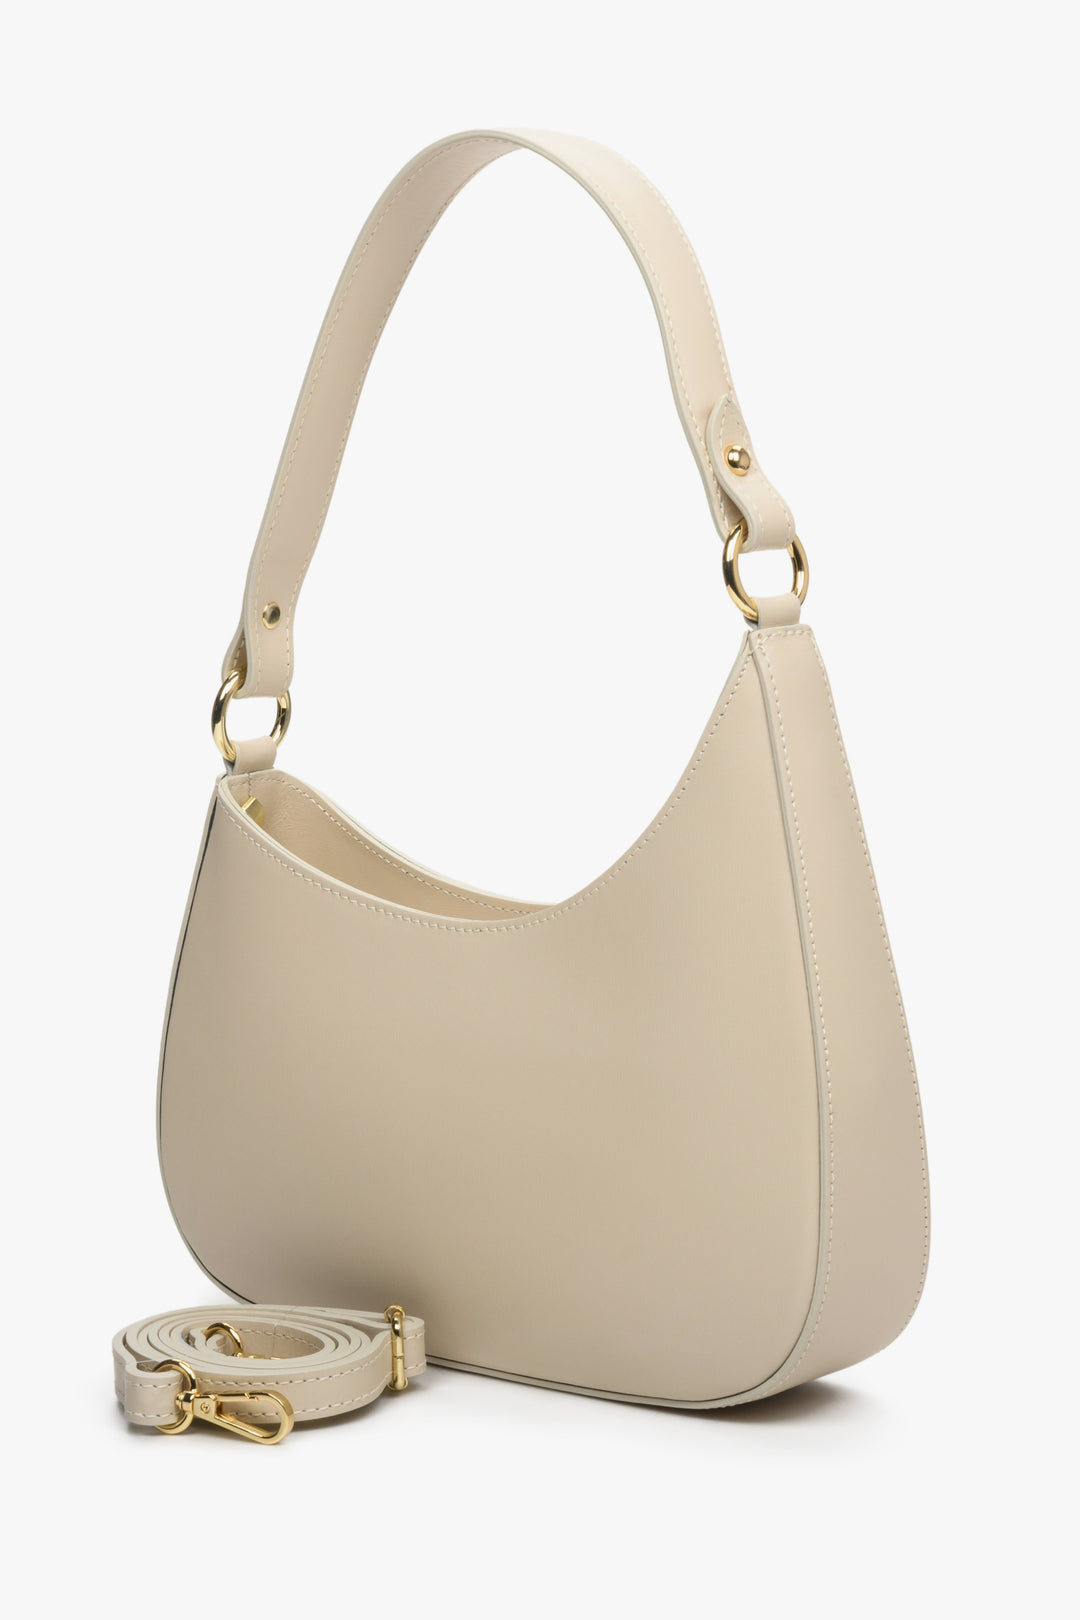 Women's sand beige Estro shoulder bag with detachable strap.